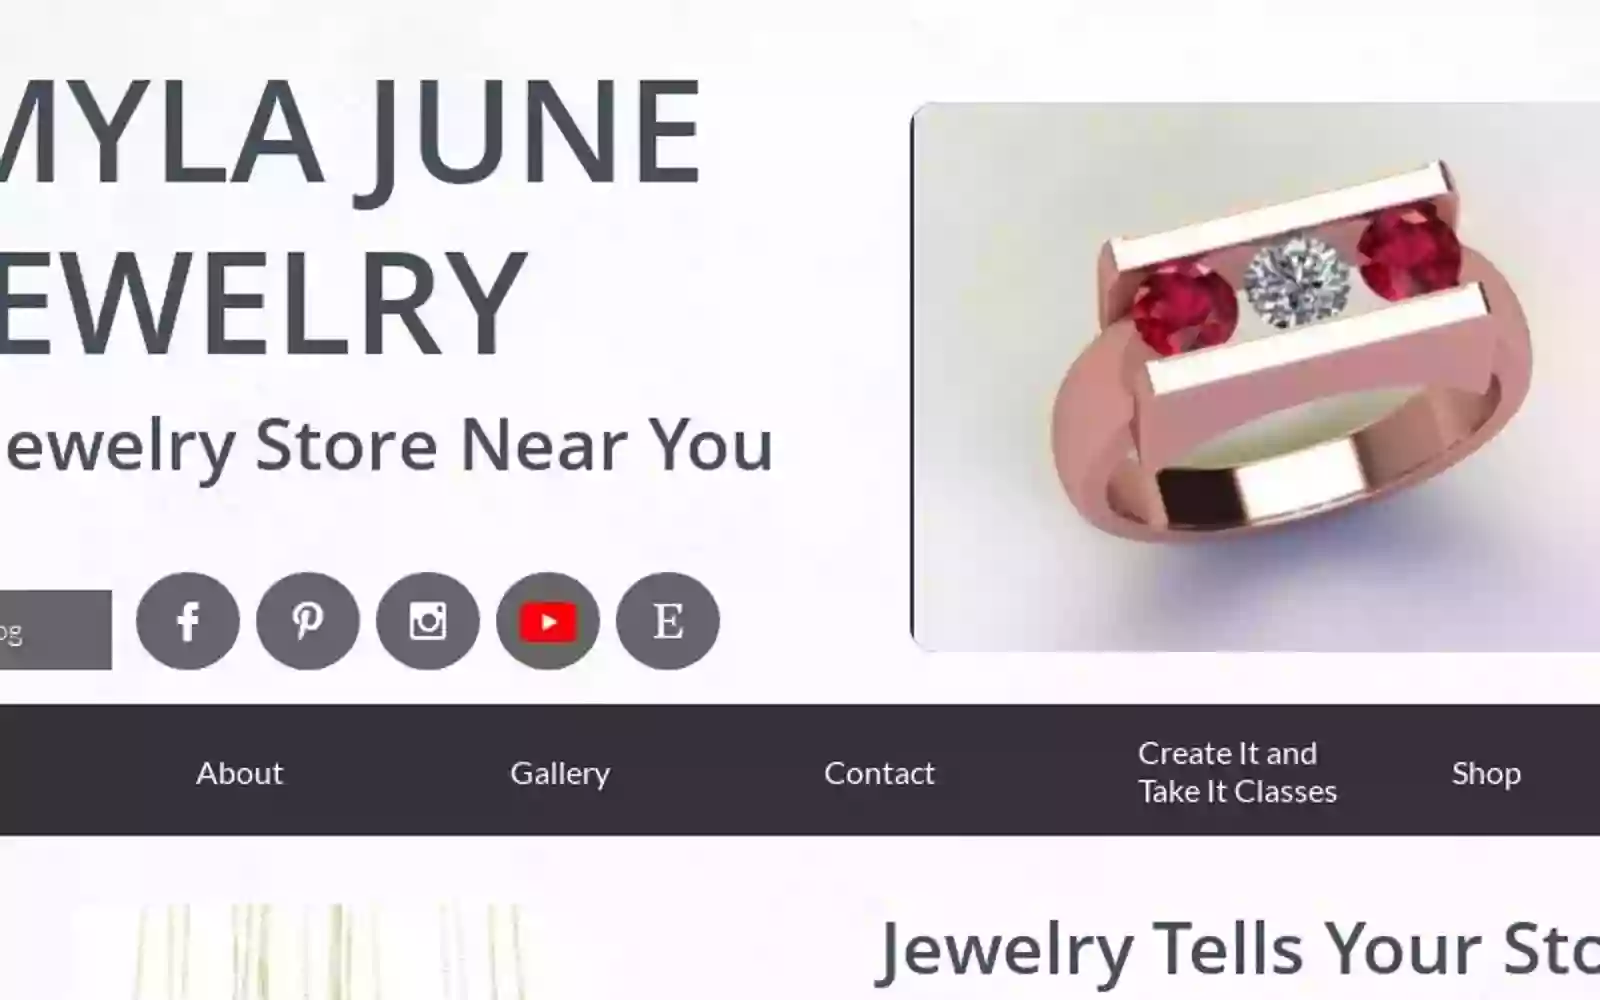 Myla June Jewelry